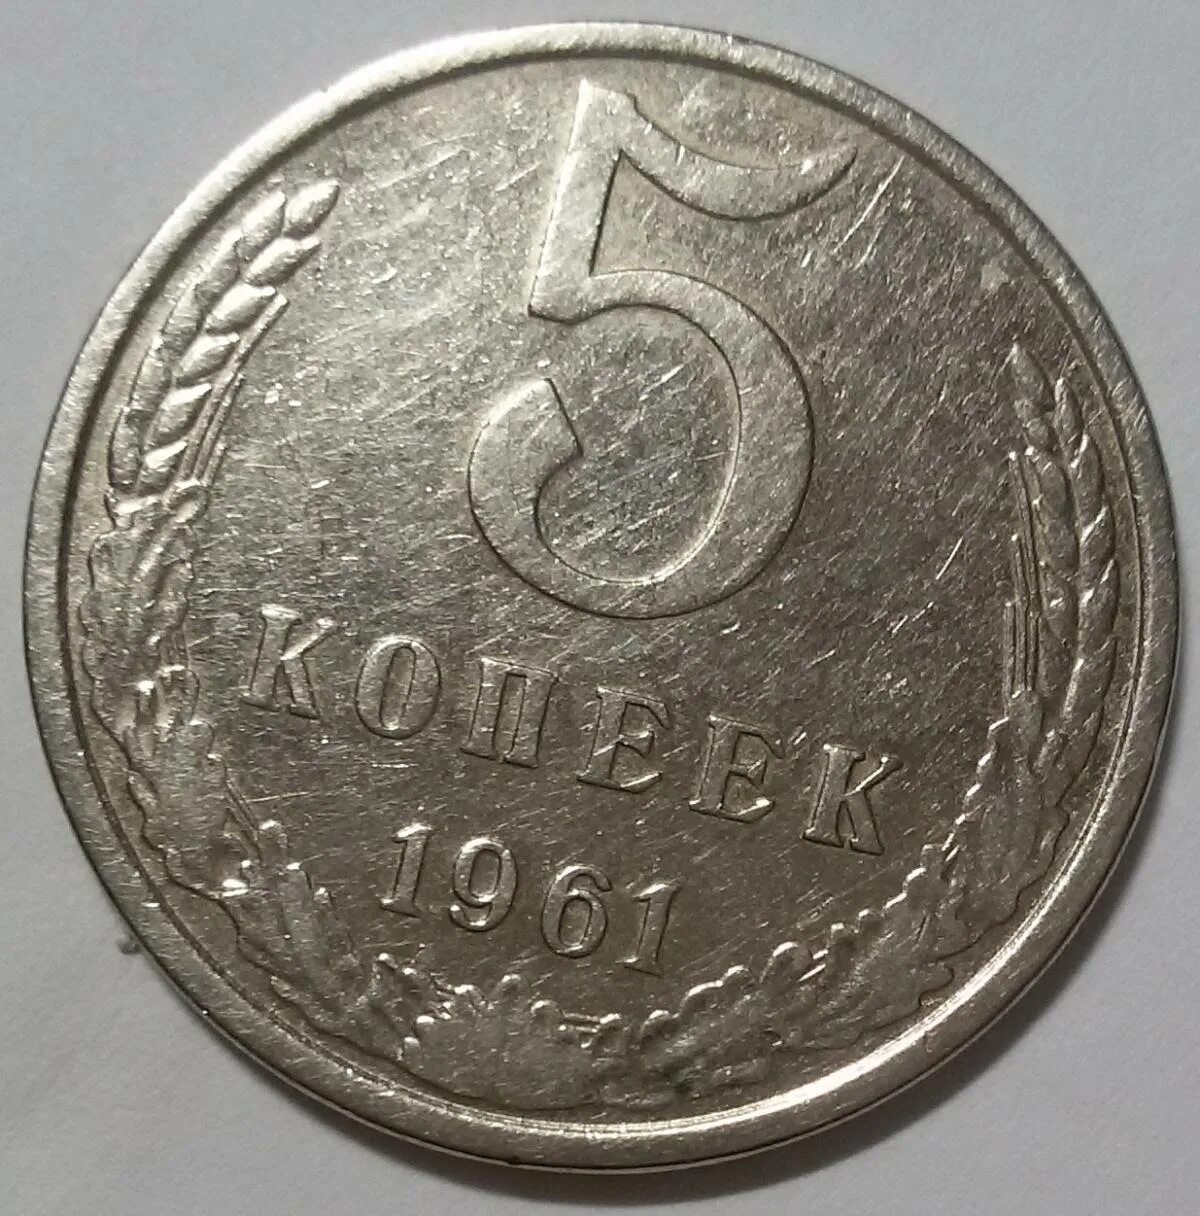 5 копейки 1961 года цена стоимость монеты. Медный пятак 1961. 5 Копеек 1961. Медной никиливая 5 копеек 1961. 5 Копеек 1961 года.